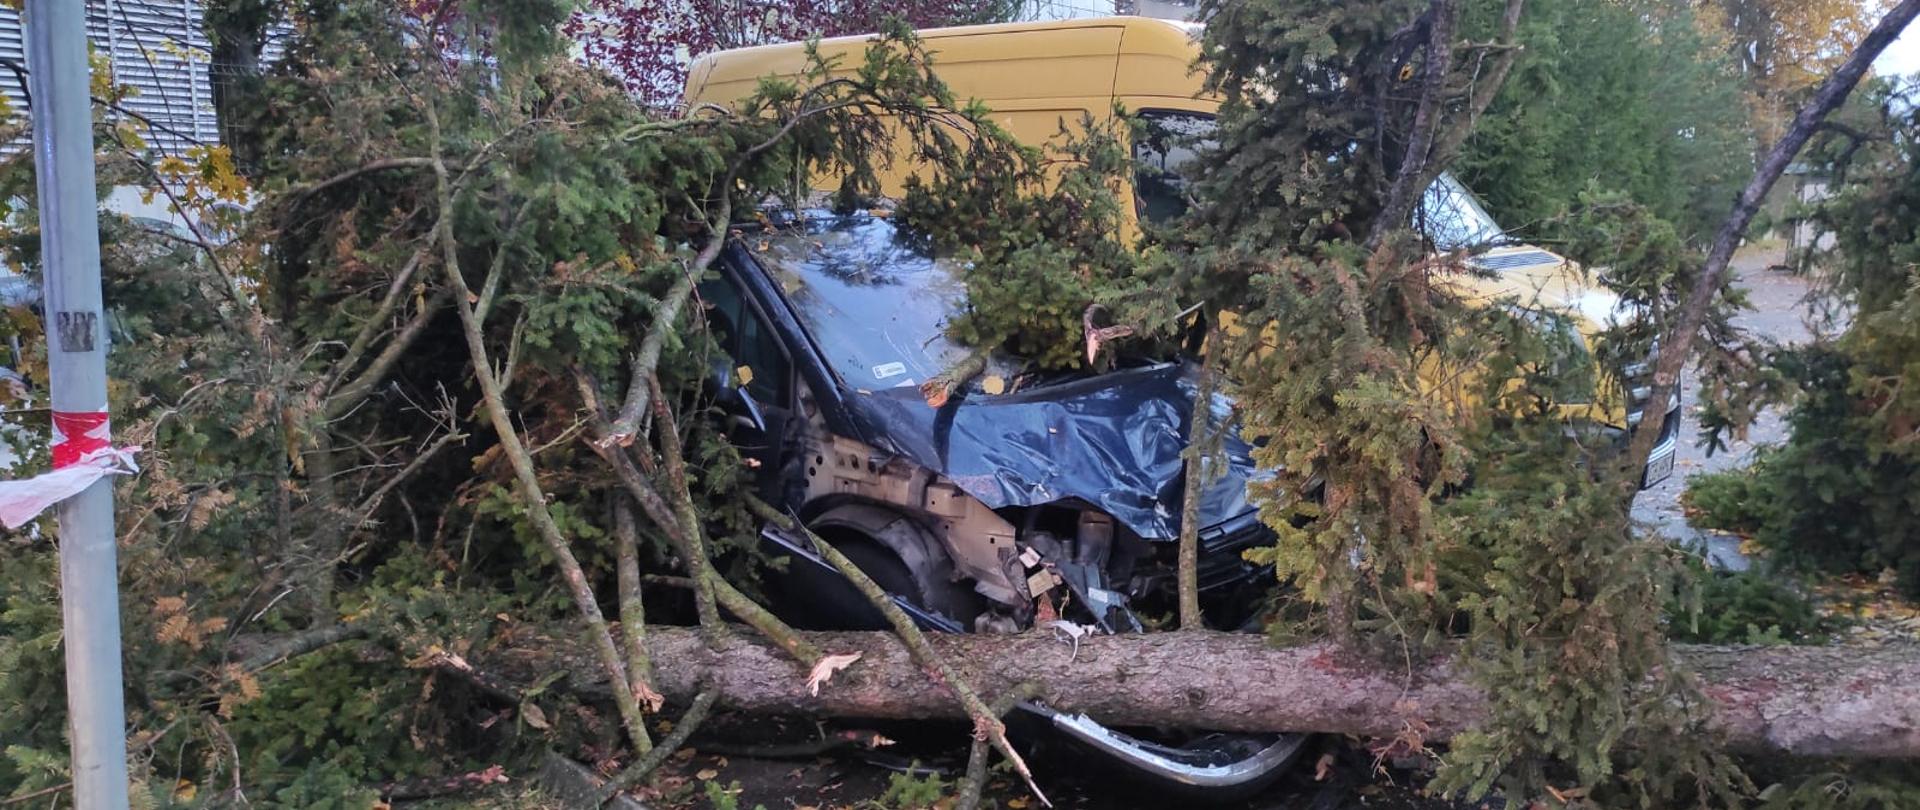 Powalone przez silny wiatr drzewo uszkodziło zaparkowany samochód osobowy. Nadwozie pojazdu zostało zgniecione.